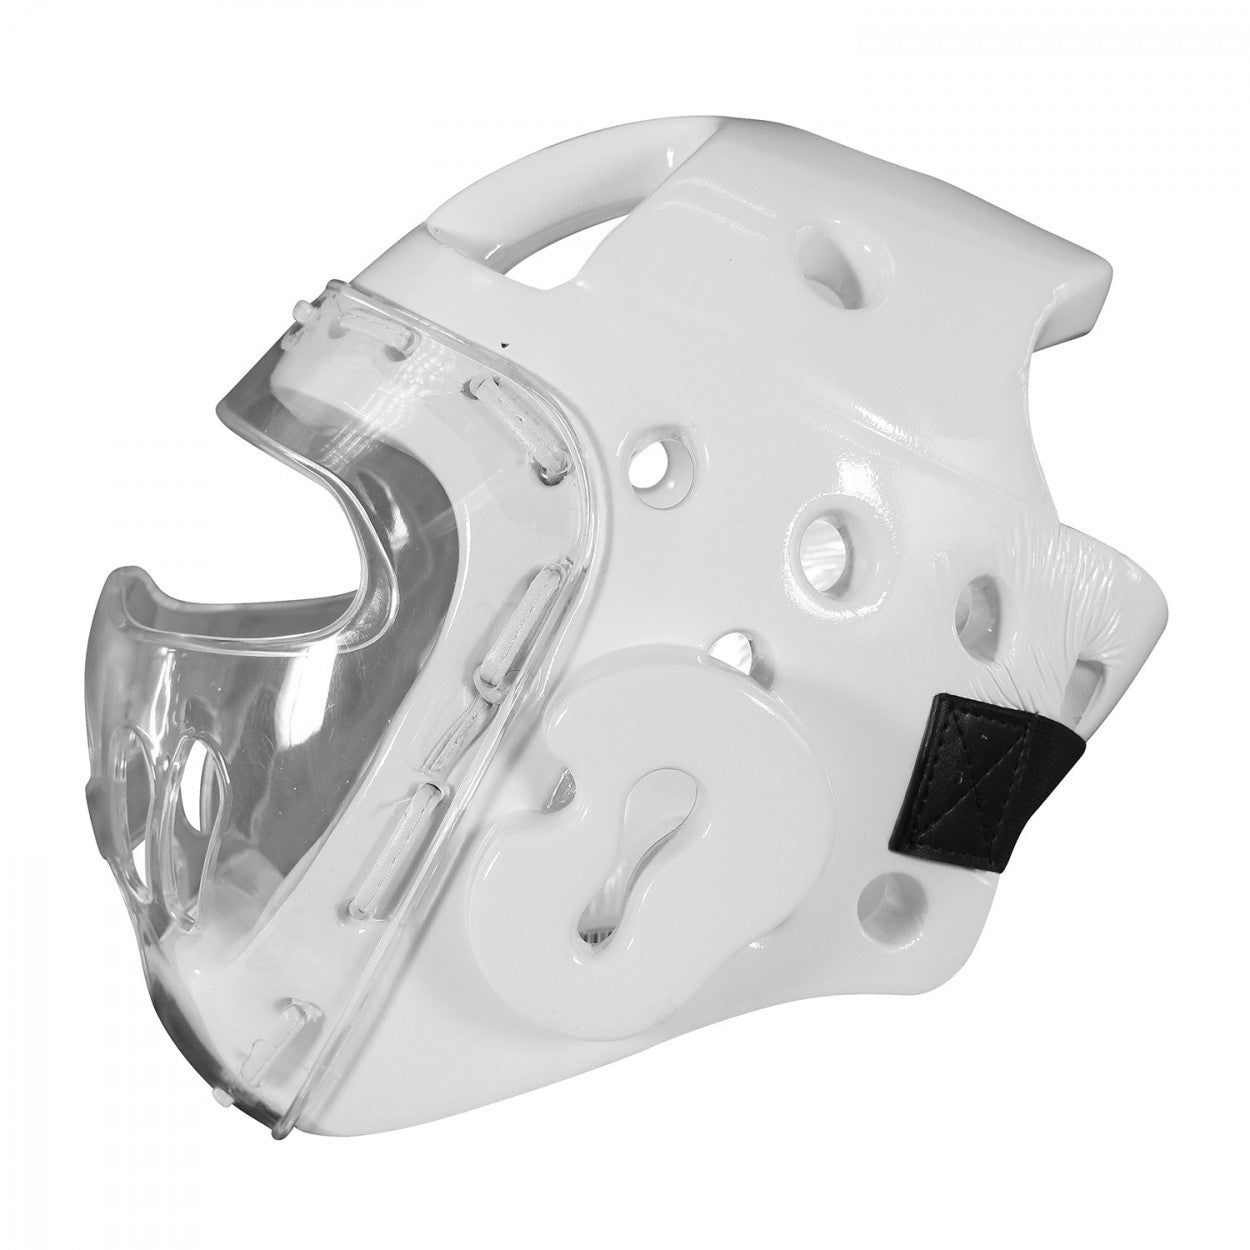 Κάσκα Adidas WT με Προστατευτική Μάσκα